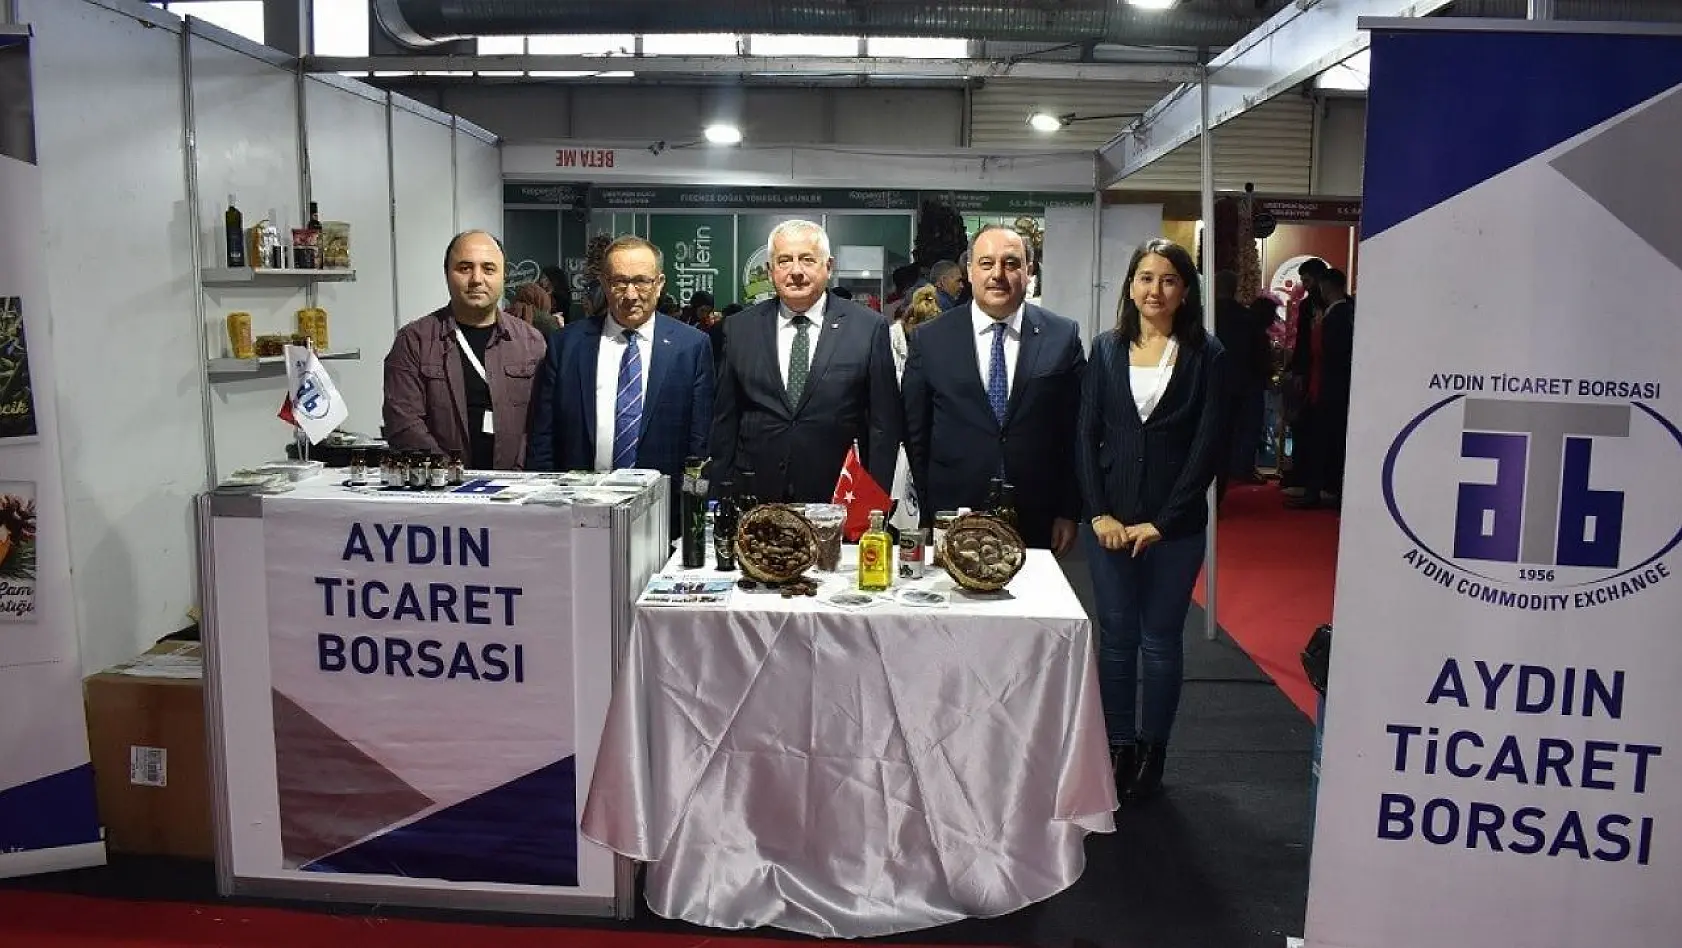 Aydın Ticaret Borsası, Diyarbakır'daki fuarda yoğun ilgi gördü